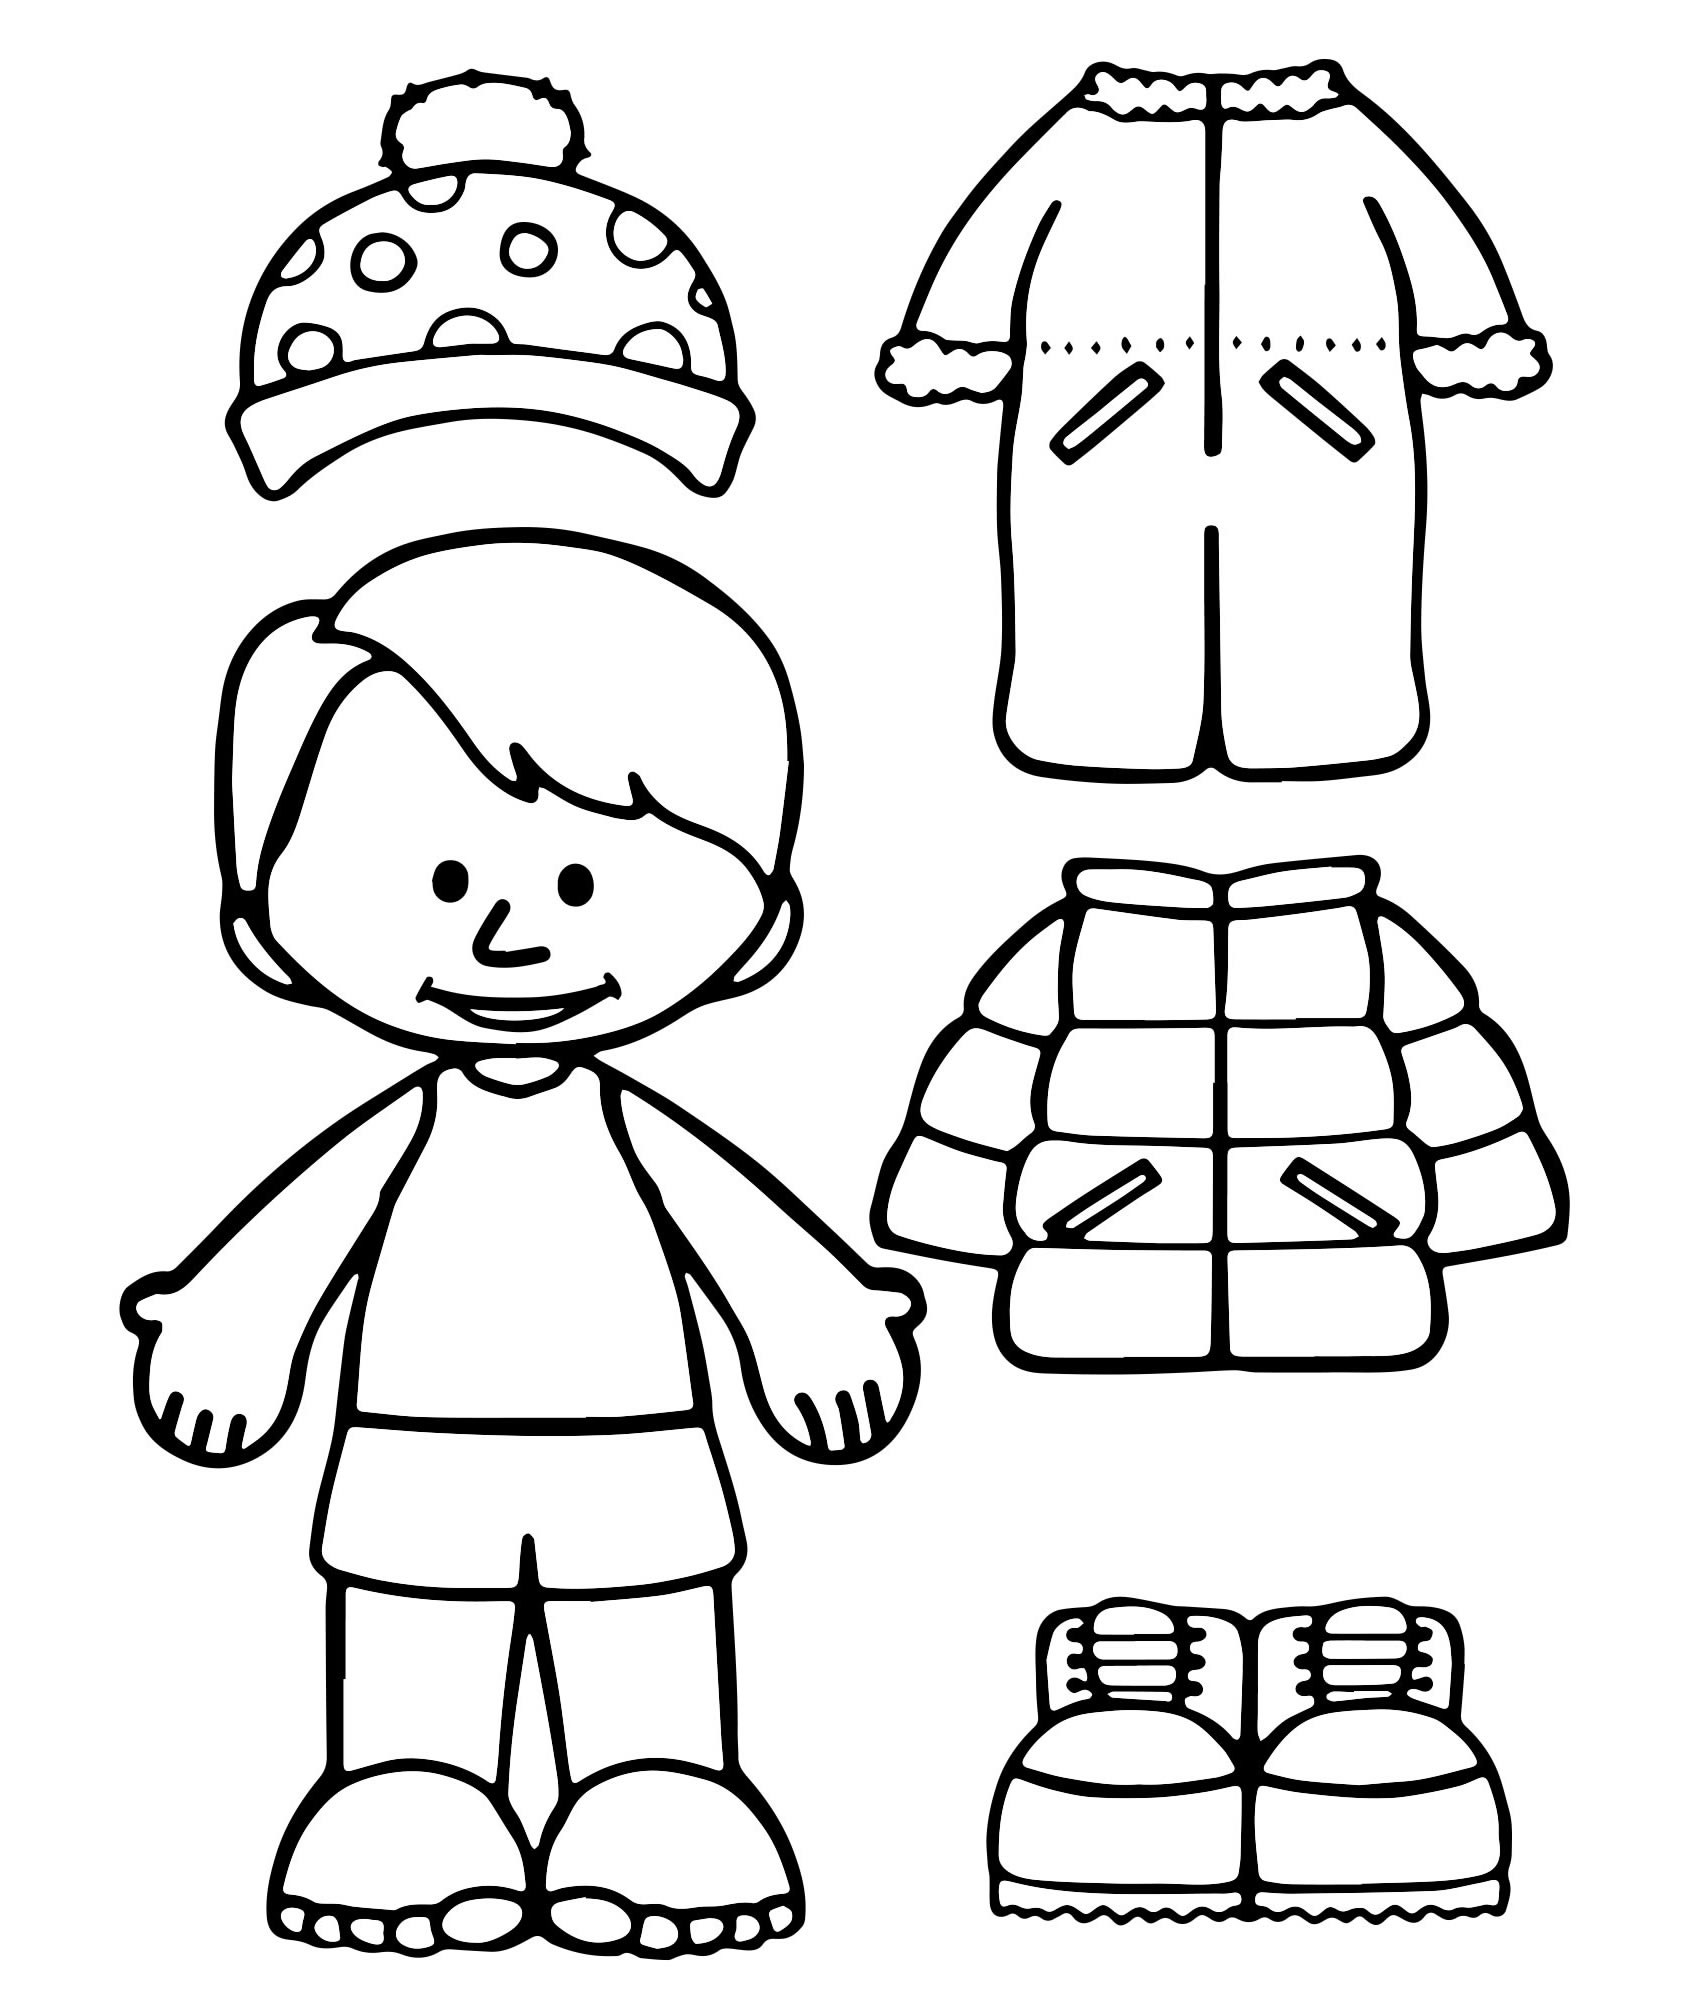 Одежда для мальчика раскраска для детей